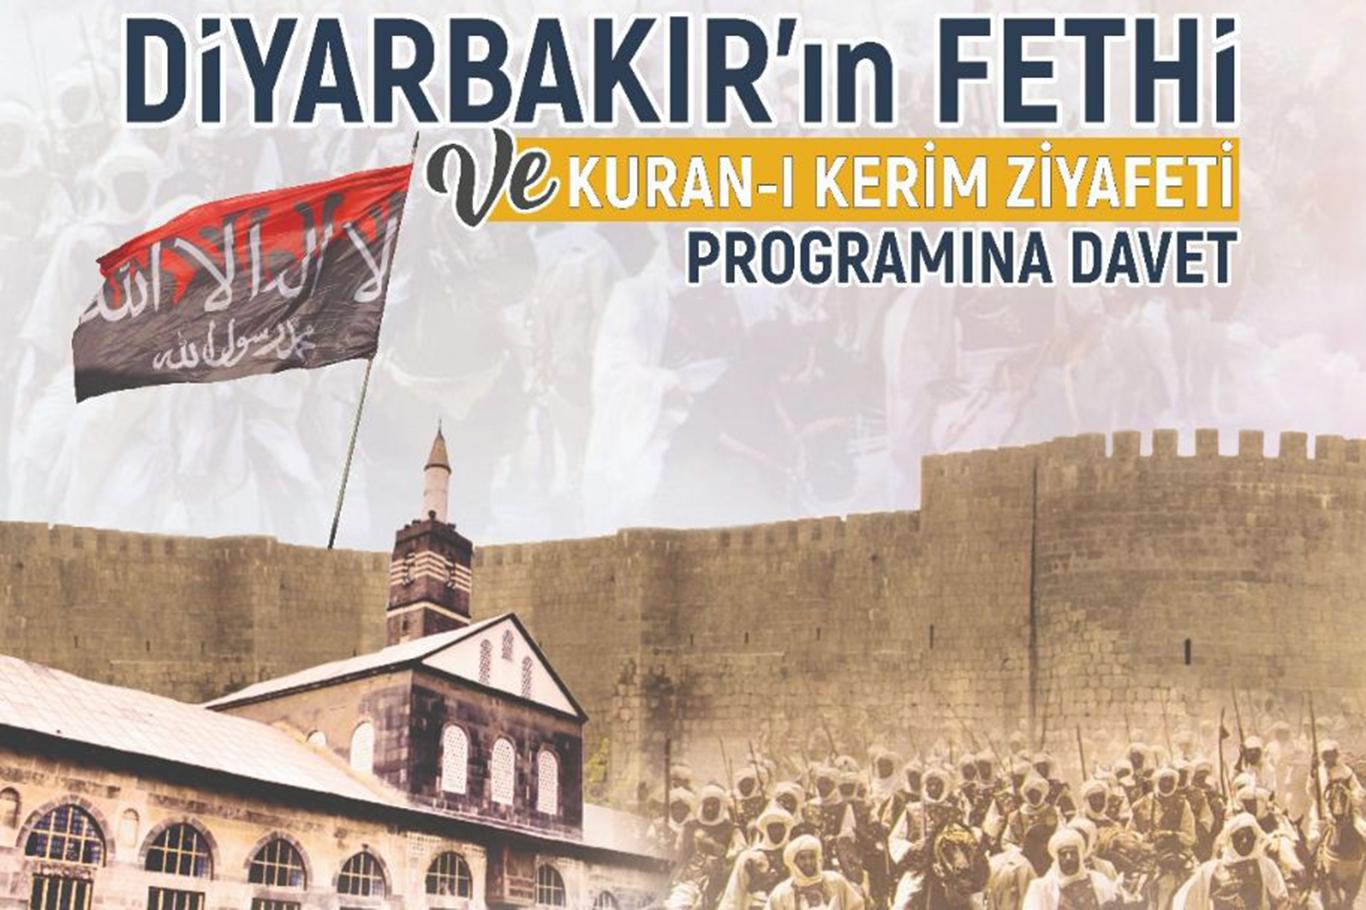 Kur'an Nesli Platformu Diyarbakır'ın fethini kutlayacak